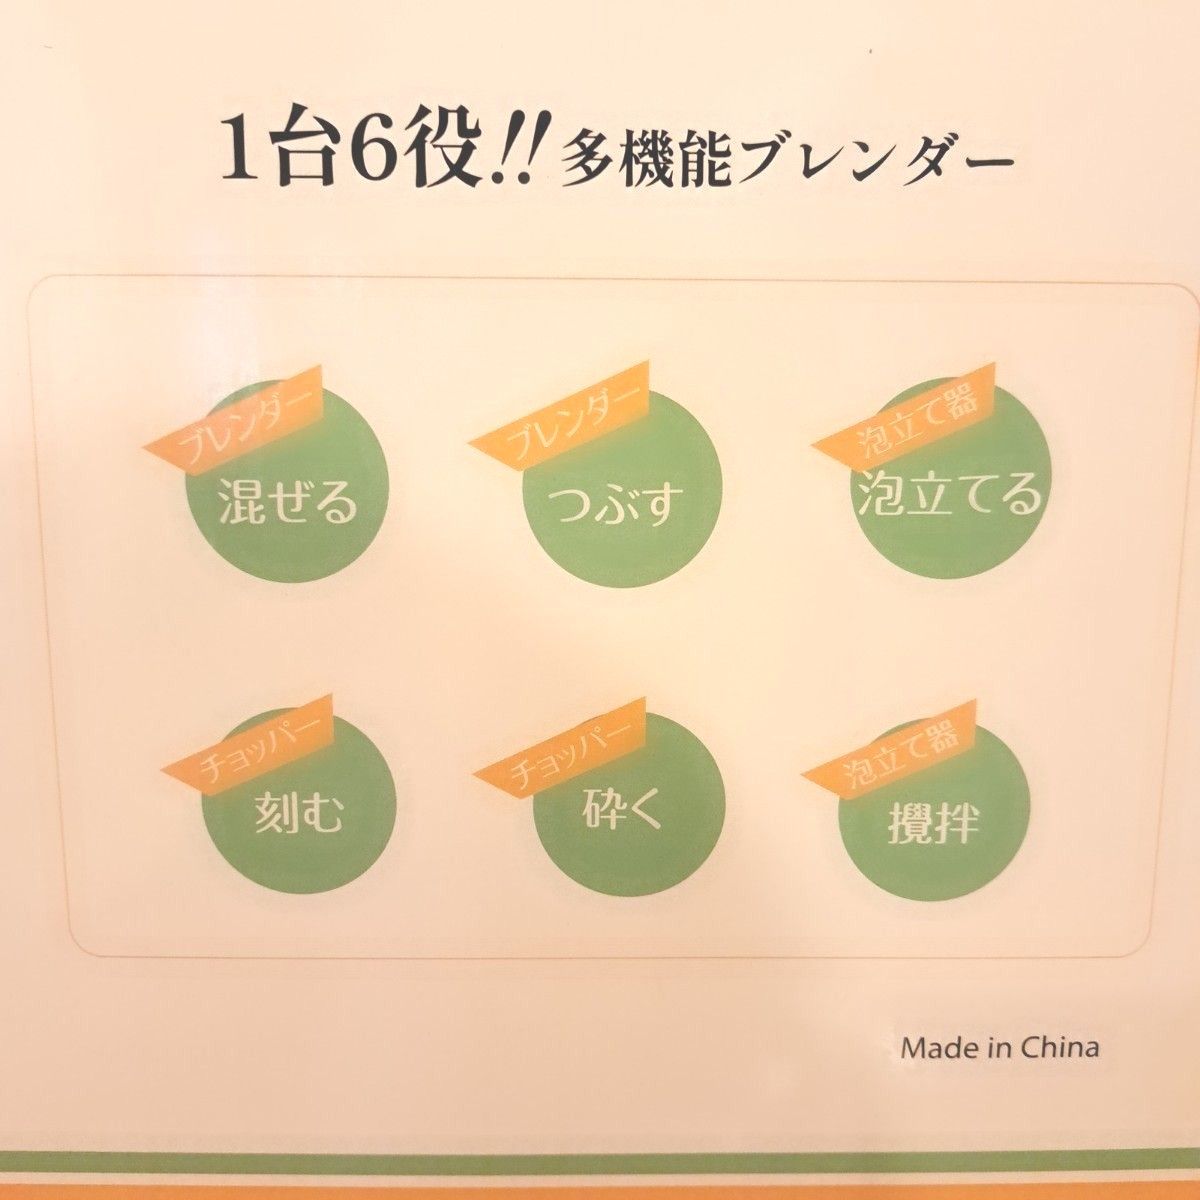 ☆☆☆ハンドブレンダー 離乳食 氷も砕ける 1台6役 ブレンダー 超時短料理 調理器具 ハンドミキサー ブラック